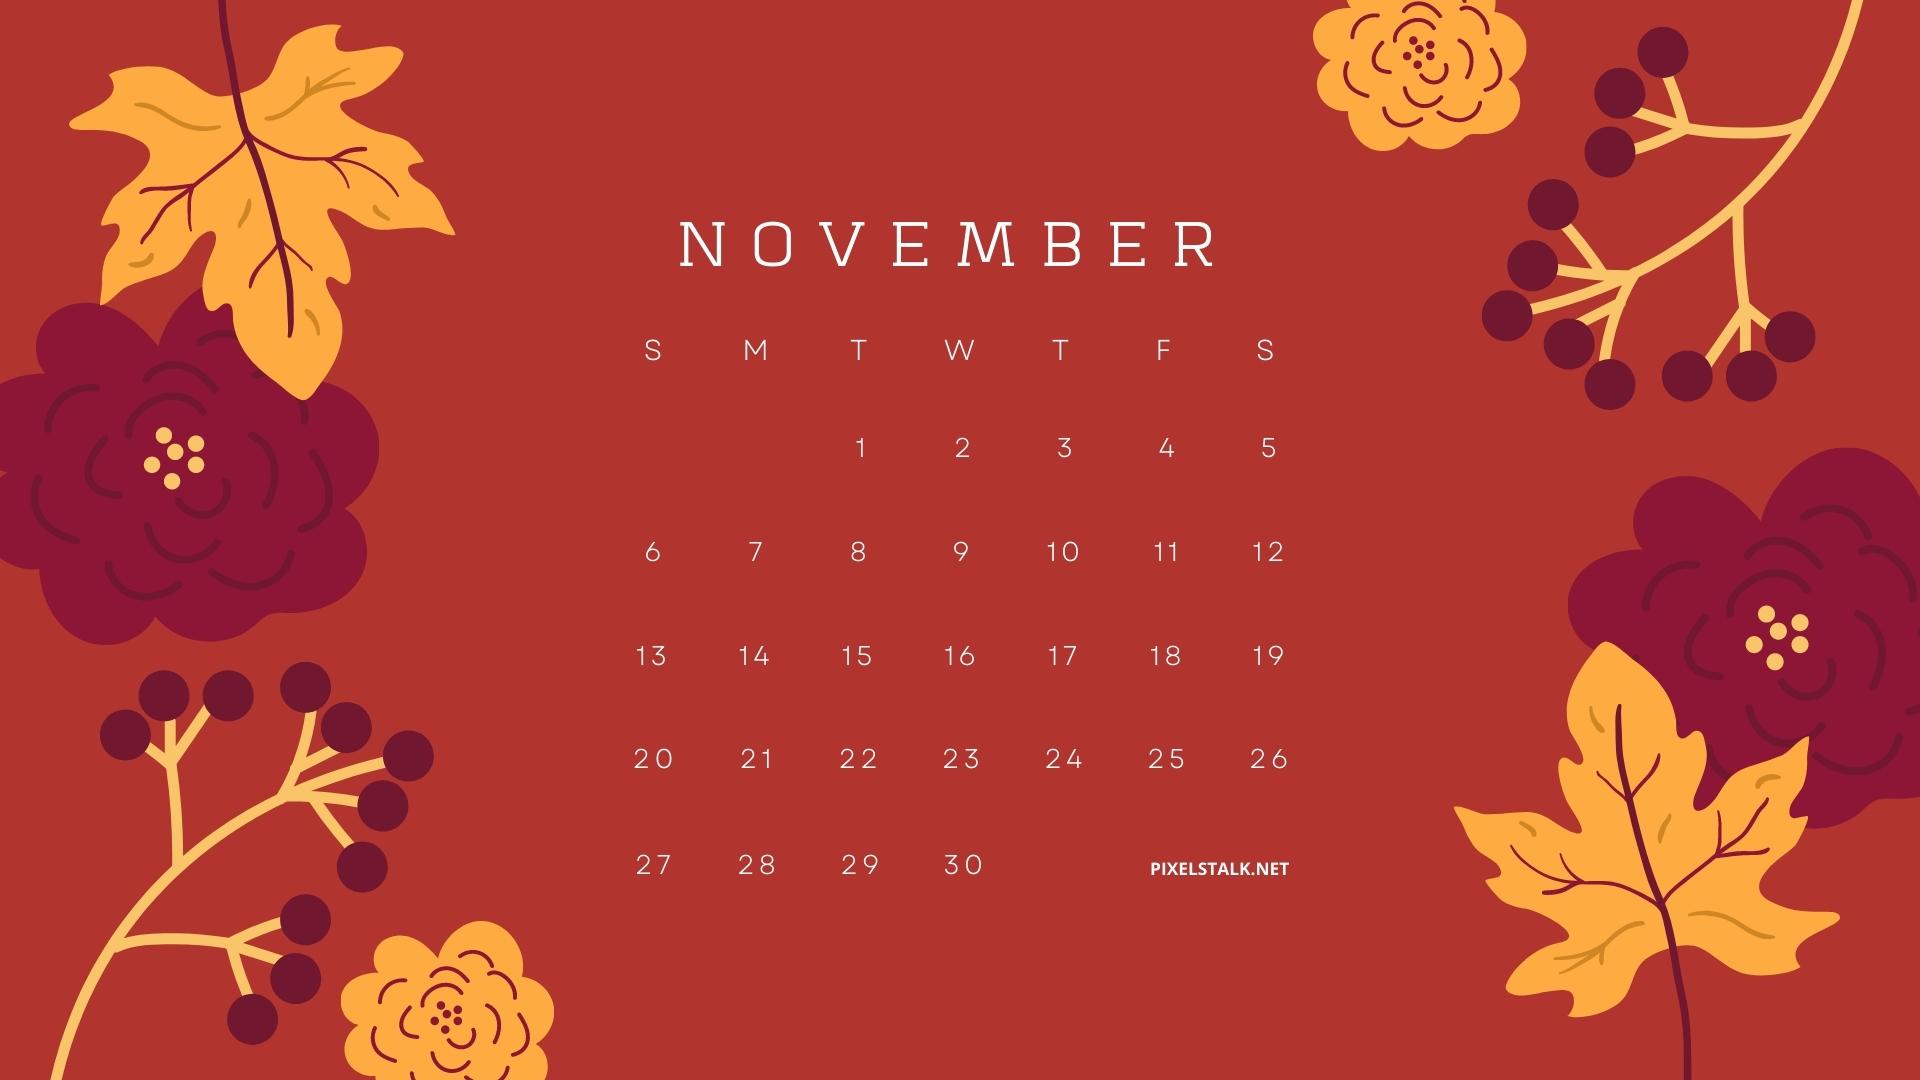 Bạn đang tìm kiếm lịch tháng 11 để lên lịch cho công việc của mình? Hãy truy cập ngay vào hình ảnh liên quan đến lịch tháng 11, bạn sẽ có được một mẫu lịch đẹp mắt và tiện dụng để lên kế hoạch cho ngày tiếp theo. 